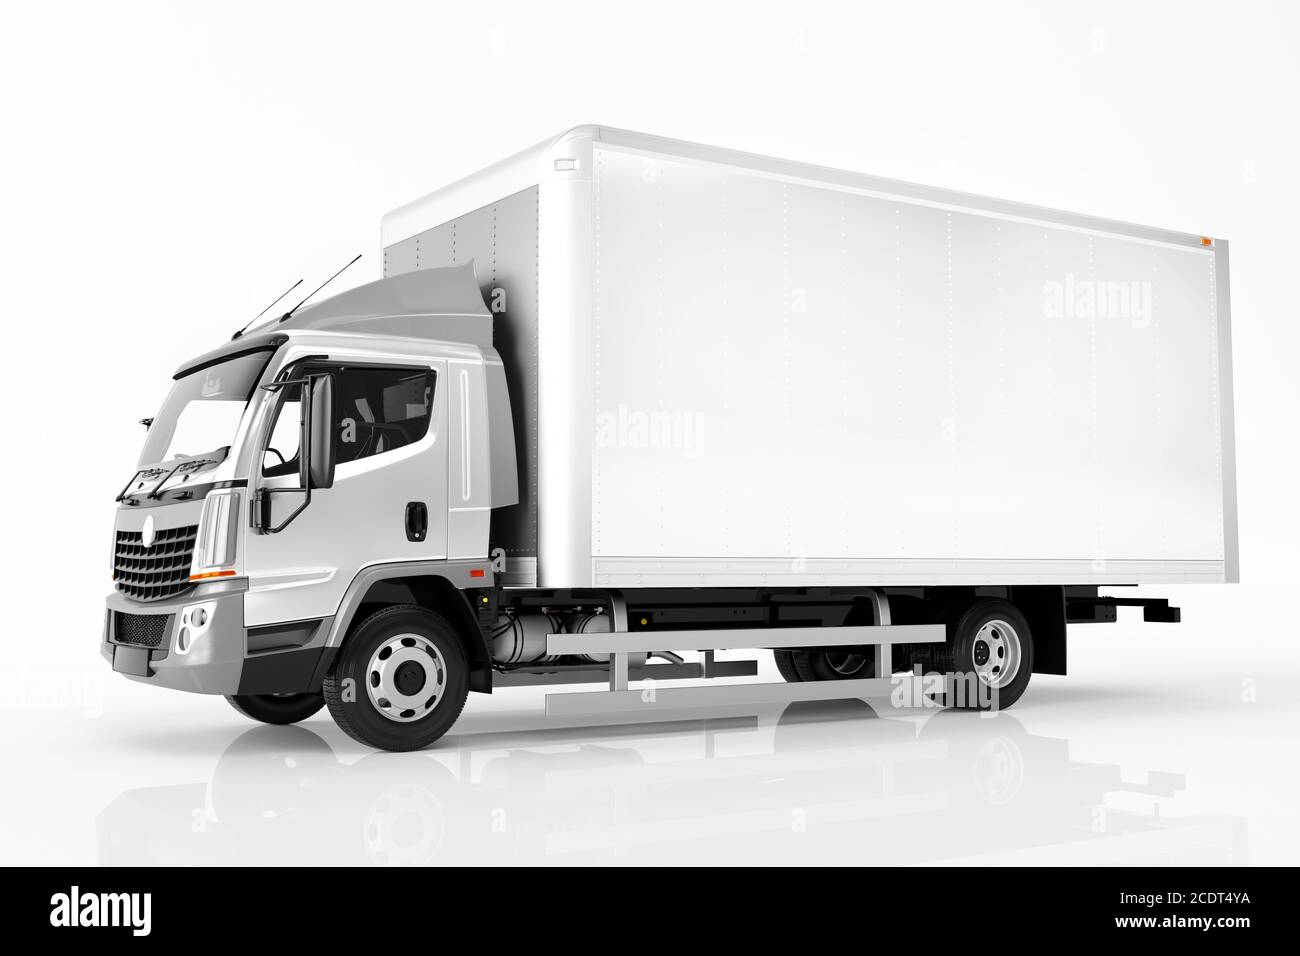 Camión comercial de carga con remolque blanco. Diseño genérico y sin brandless. Foto de stock